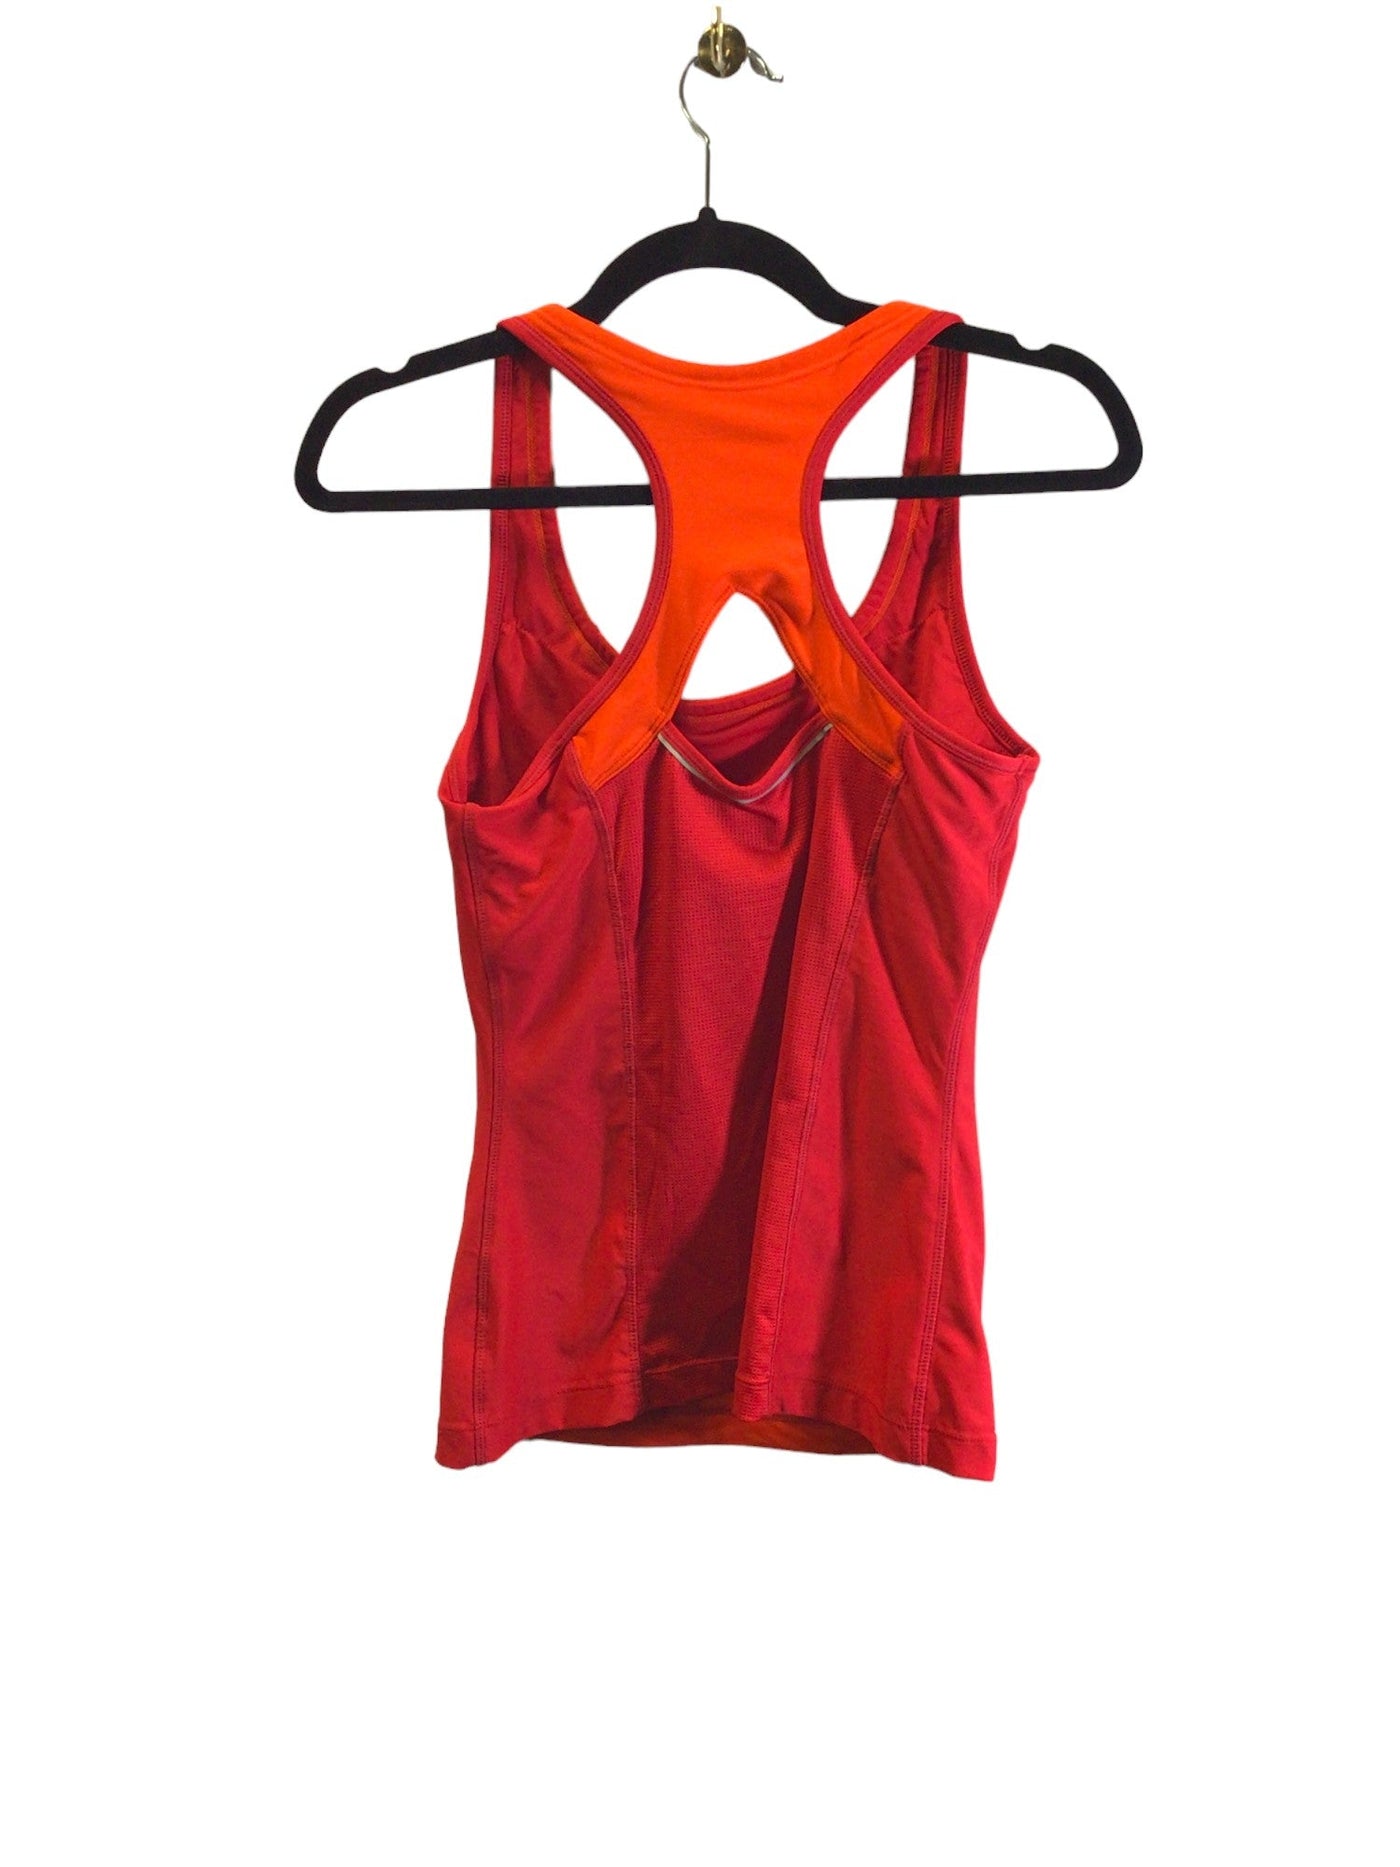 ATHLETIC WORKS Women Activewear Tops Regular fit in Orange - Size S | 9.99 $ KOOP